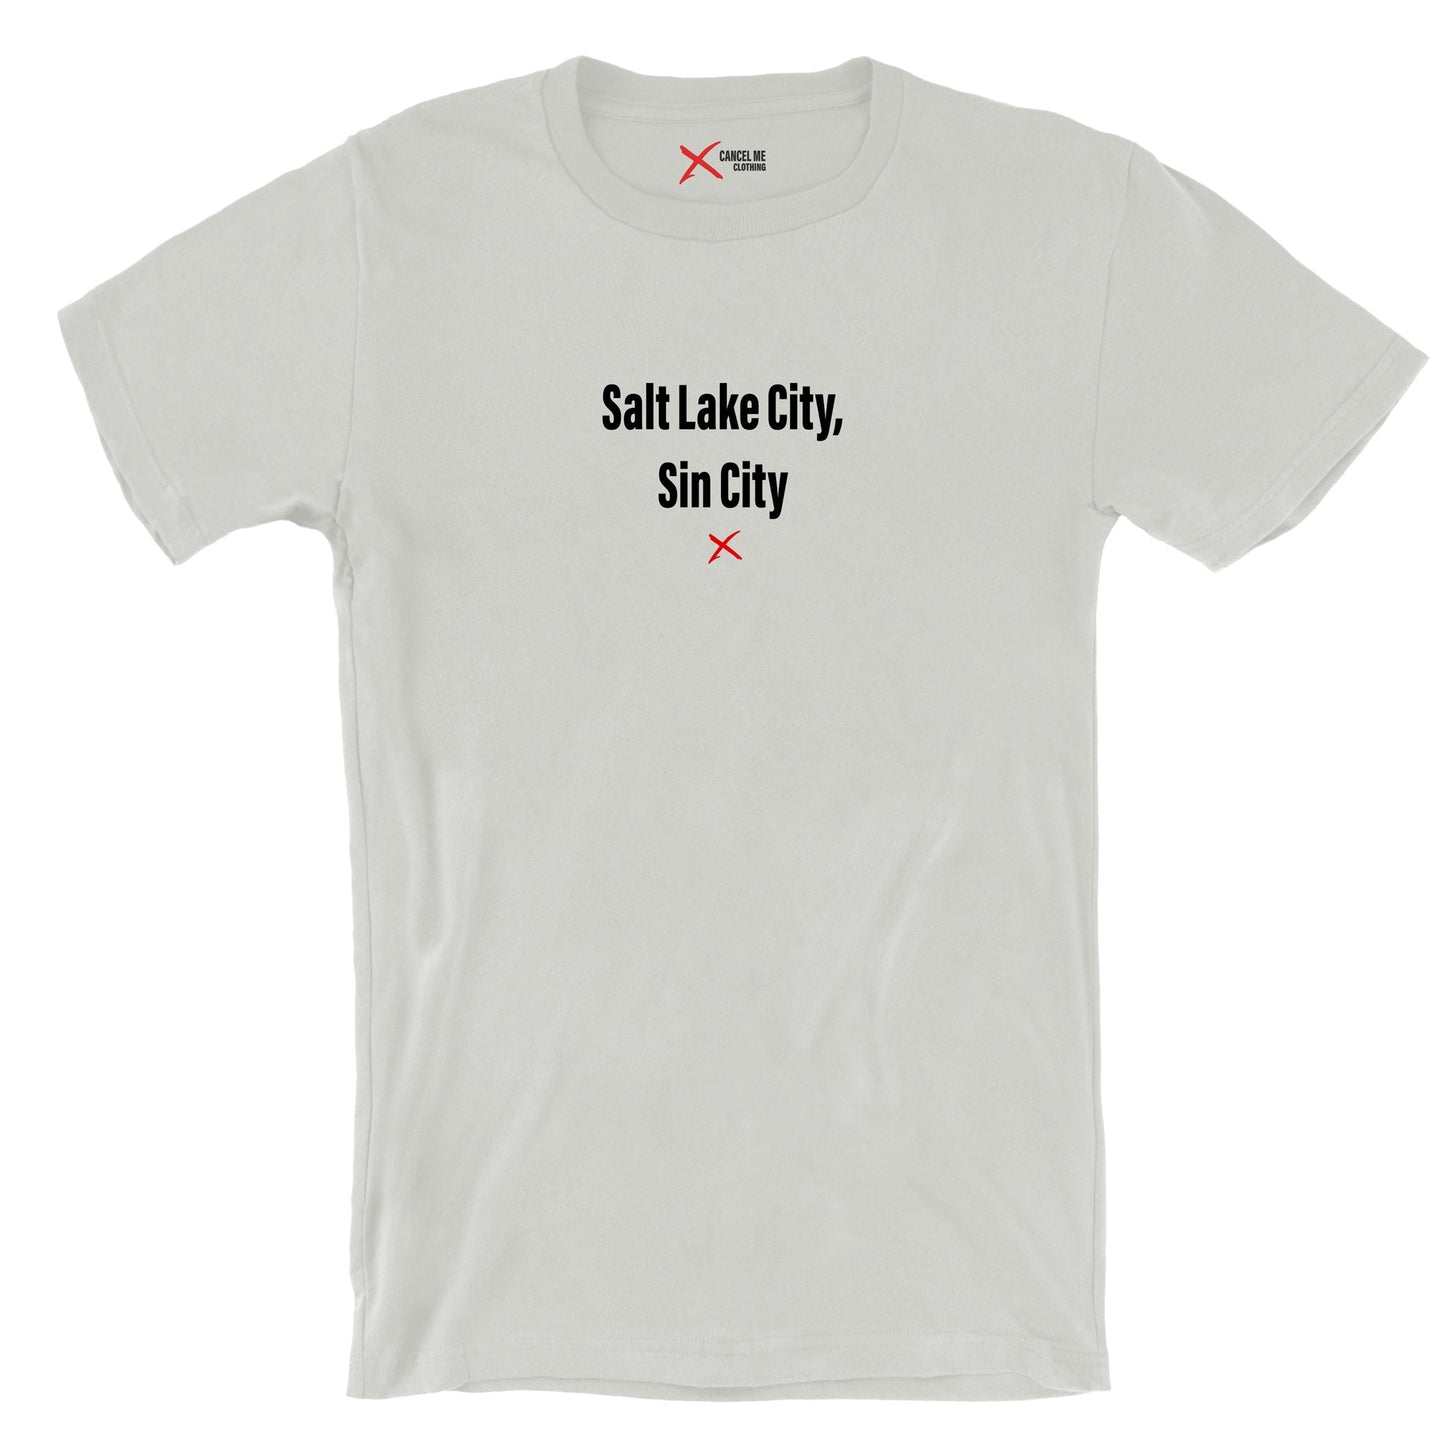 Salt Lake City, Sin City - Shirt